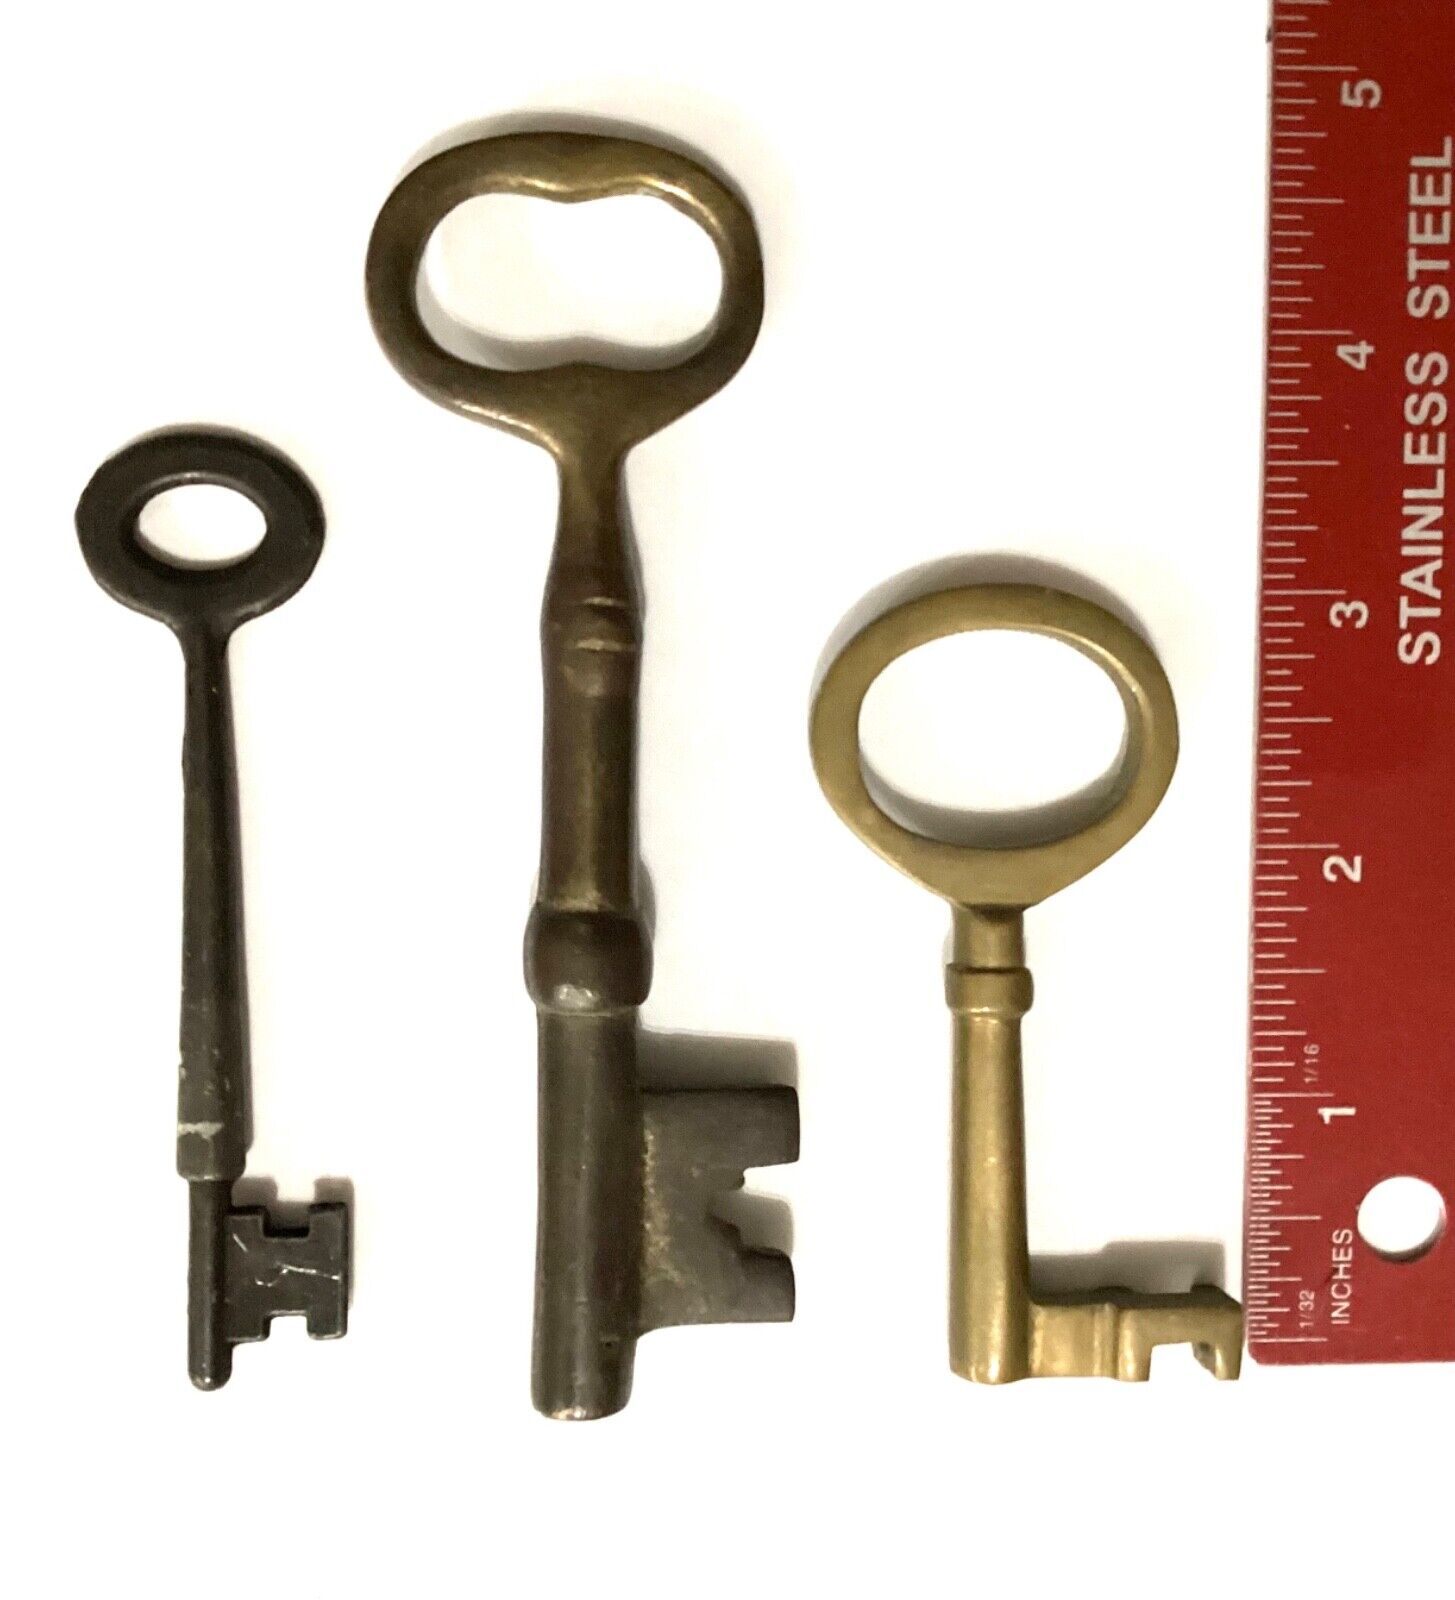 Antique Skeleton Keys Lot of 3 Brass Solid Barrel Vintage Steam Punk Rare Nice